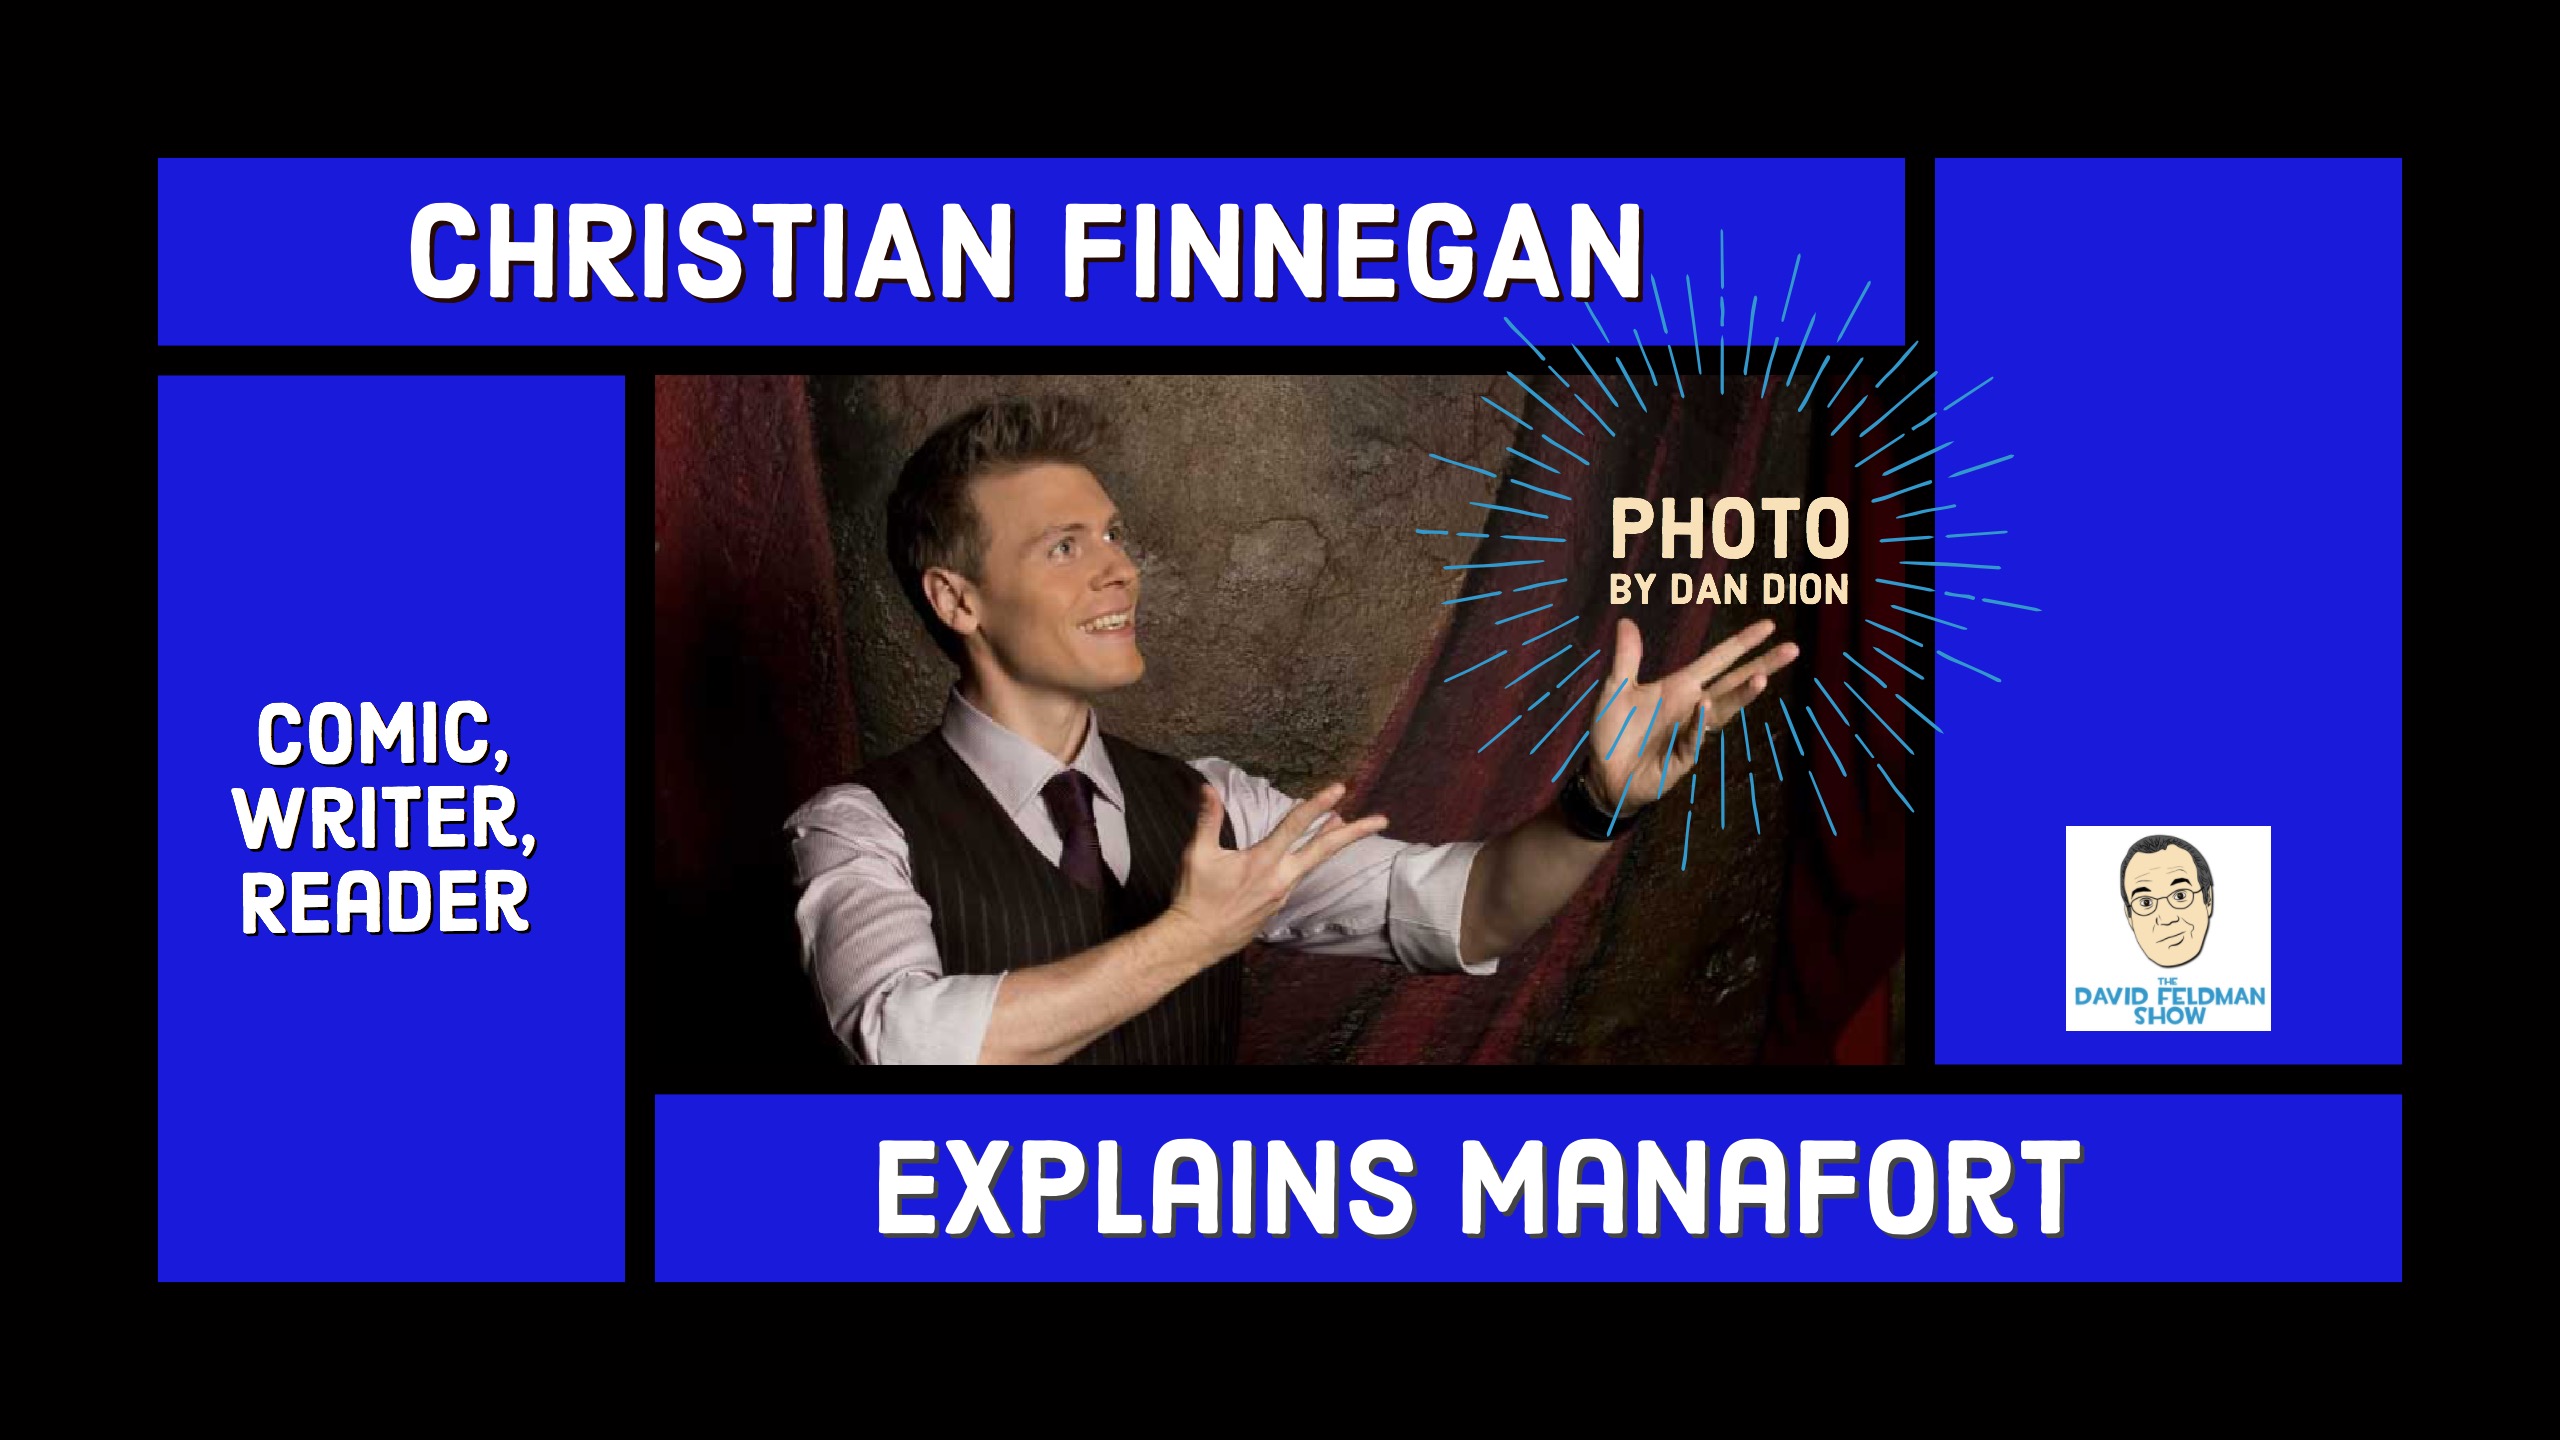 Christian Finnegan